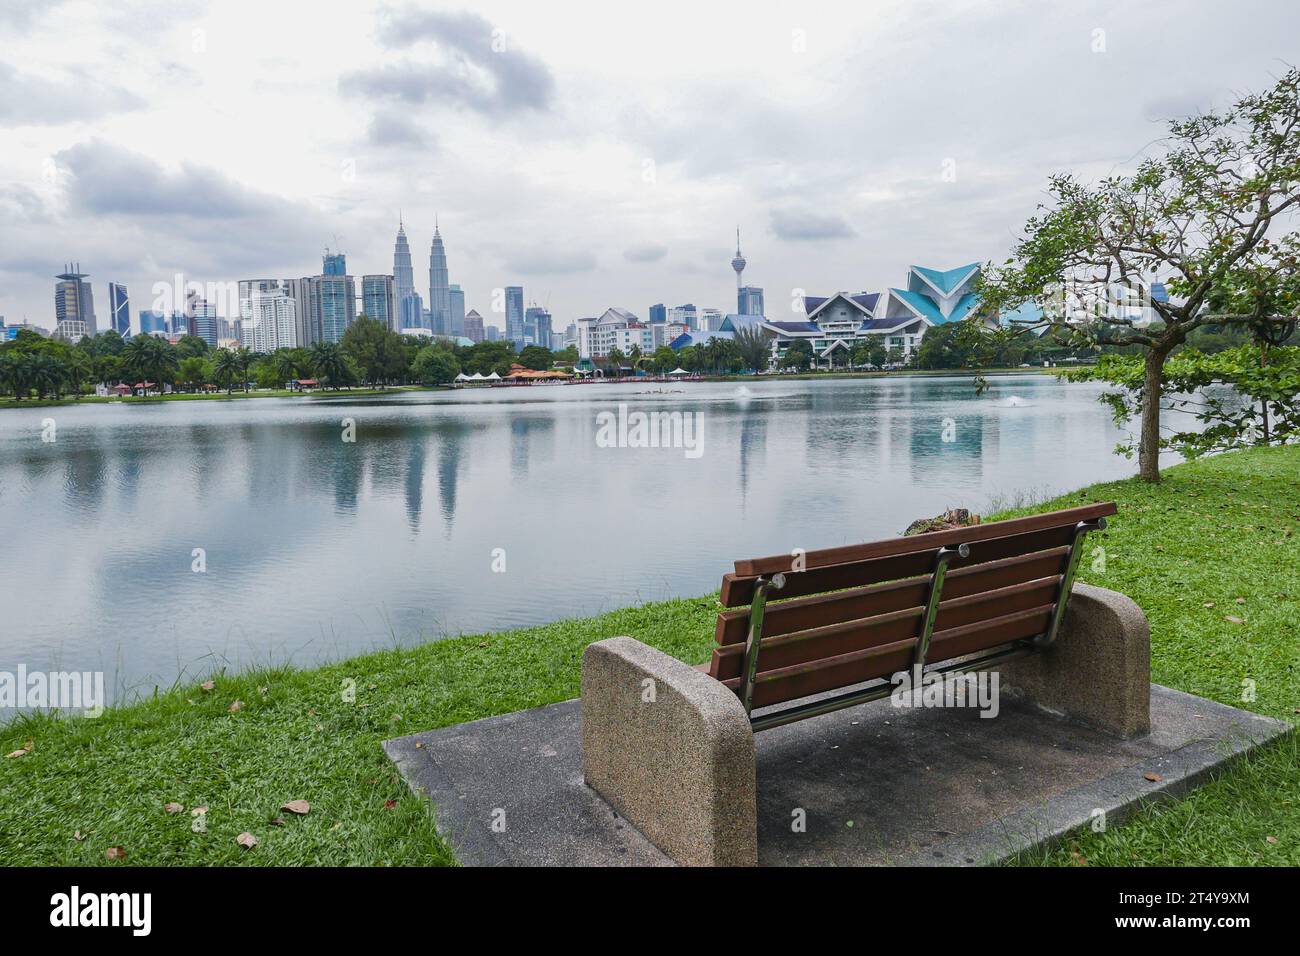 Banc de parc surplombant le lac Titiwangsa et Kuala Lumpur Skyline Banque D'Images